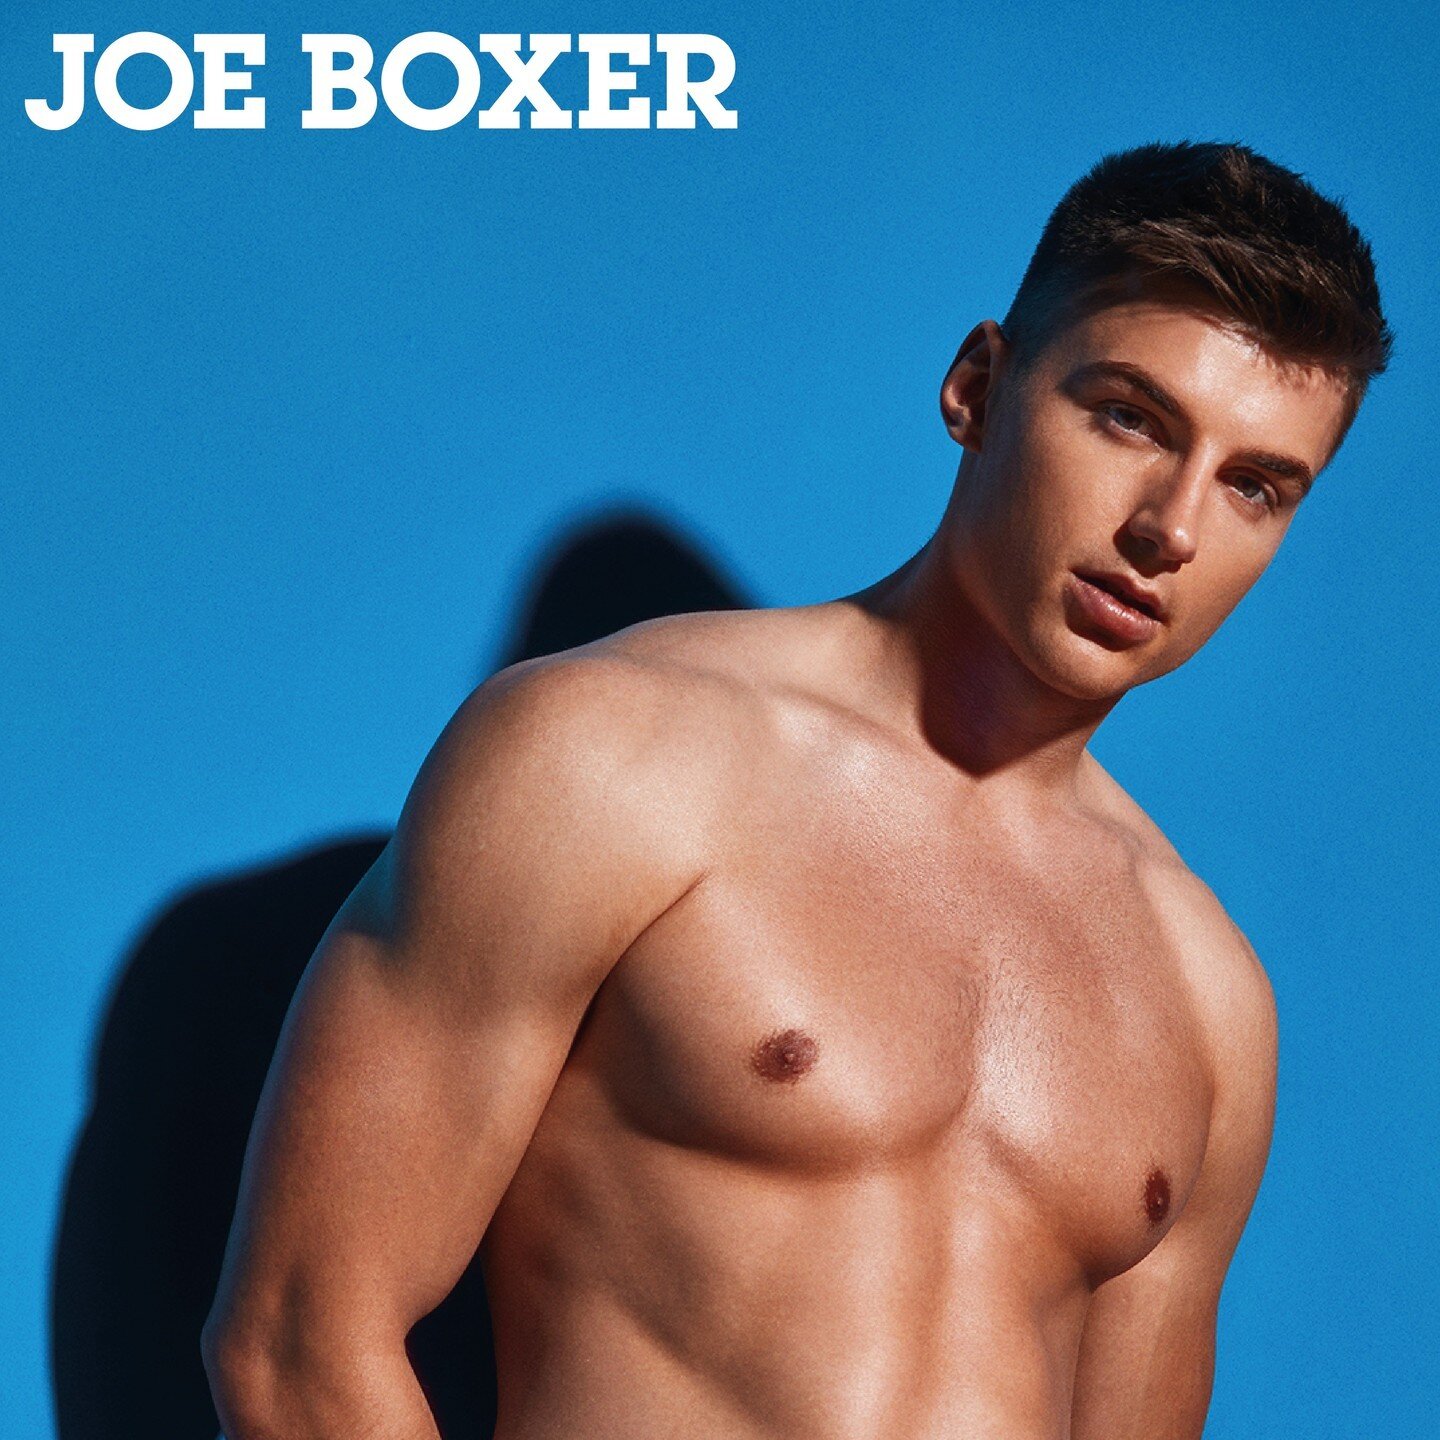 Joe Boxer getting you Summer Ready!☀️

#JoeBoxer #JoeBoxerSwimwear #ShowYourJoe